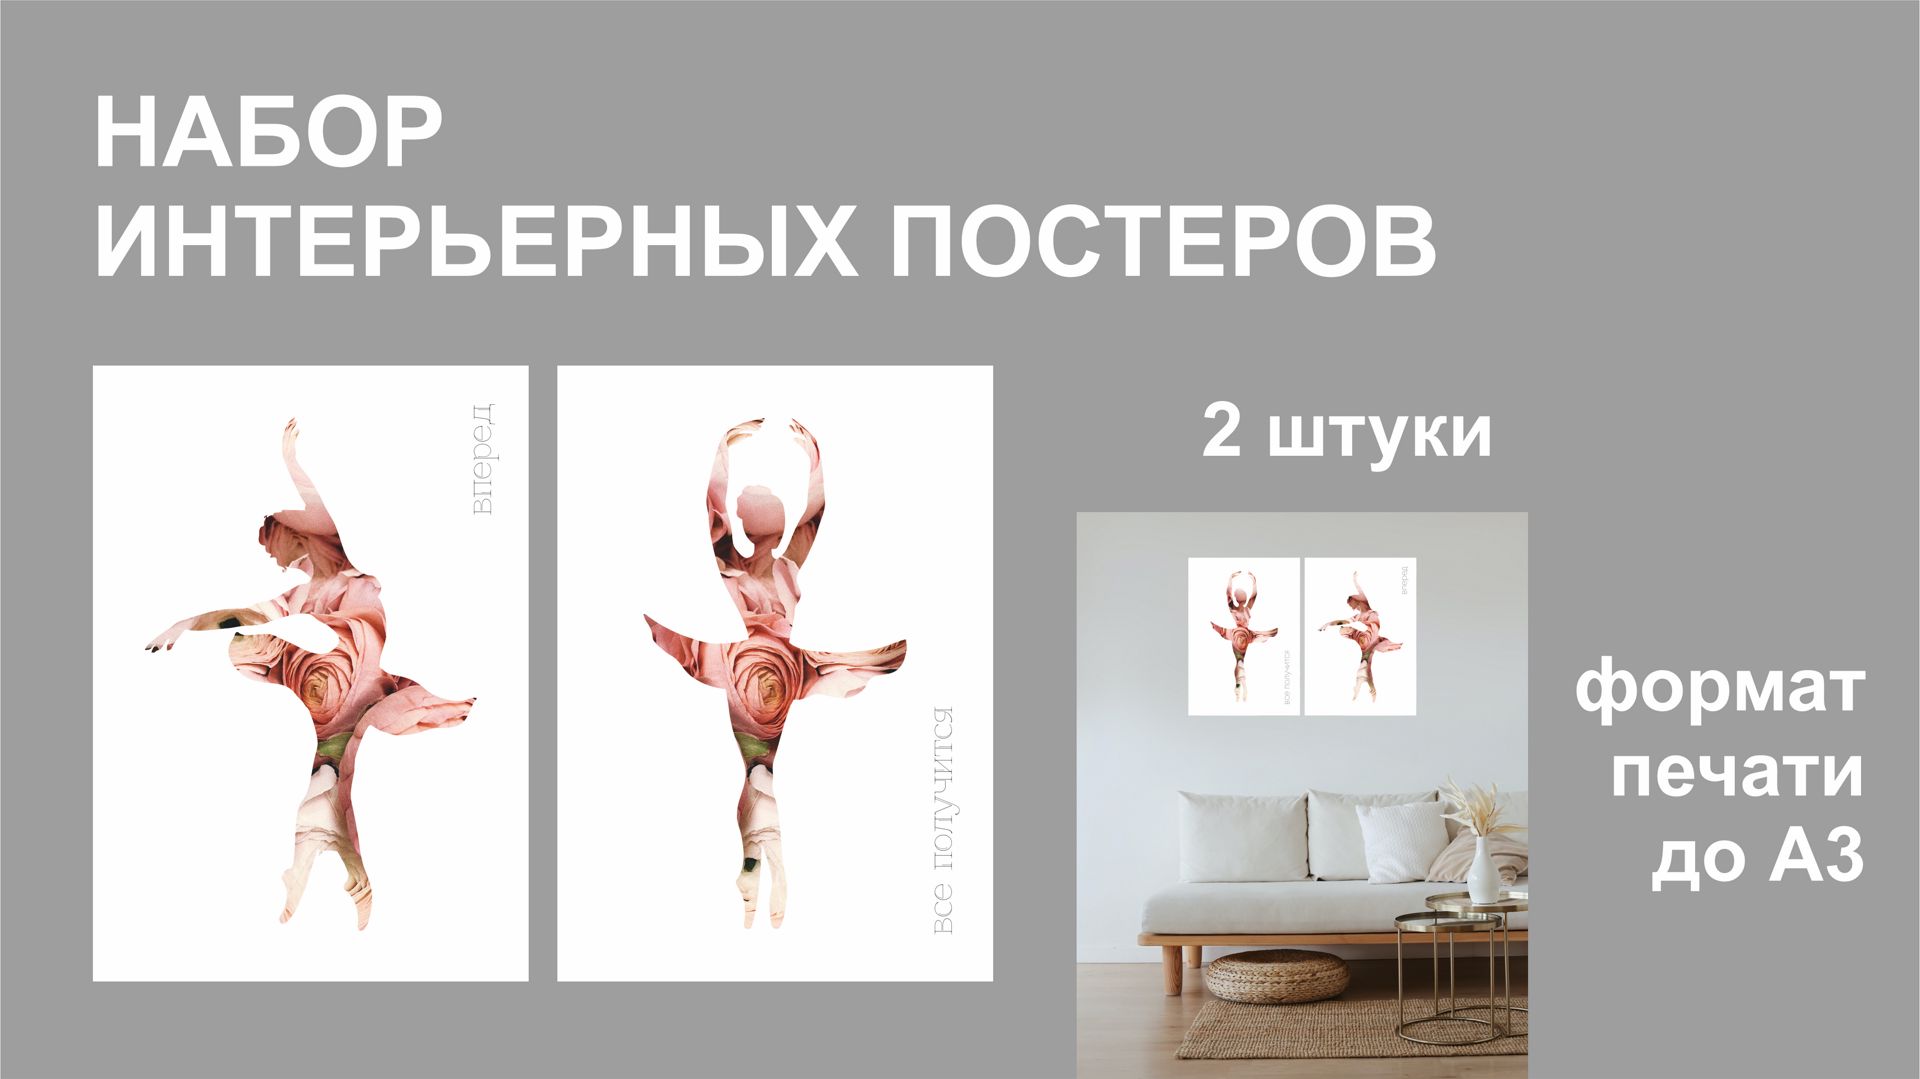 Комплект из 2 интерьерных постеров "Балерина и мотивация"